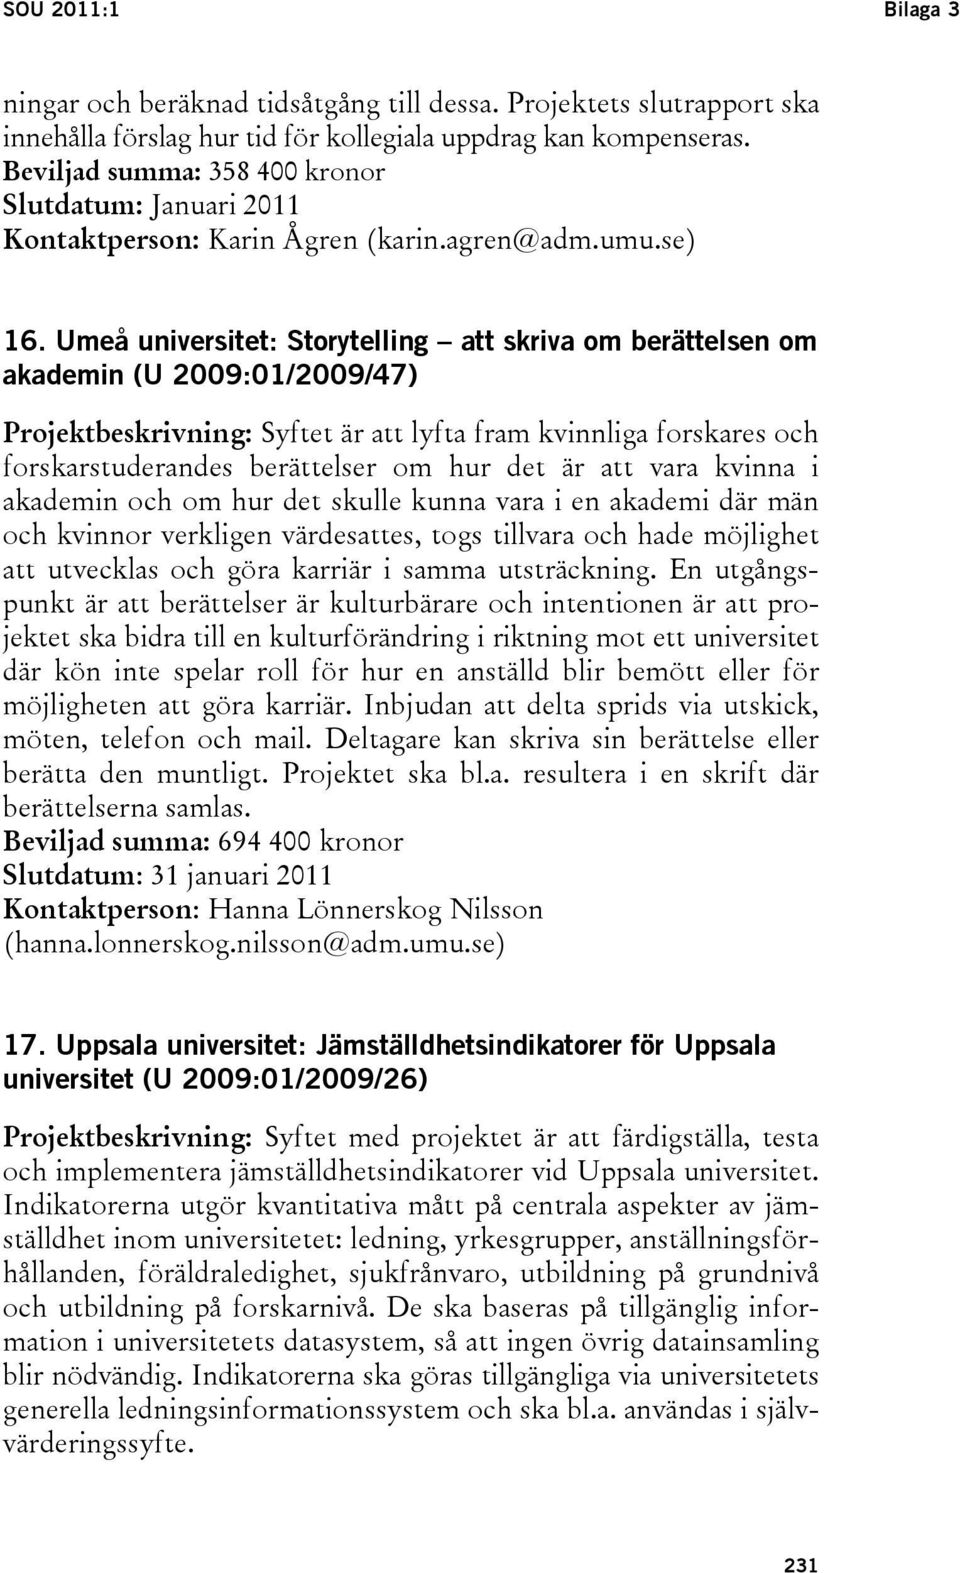 Umeå universitet: Storytelling att skriva om berättelsen om akademin (U 2009:01/2009/47) Projektbeskrivning: Syftet är att lyfta fram kvinnliga forskares och forskarstuderandes berättelser om hur det